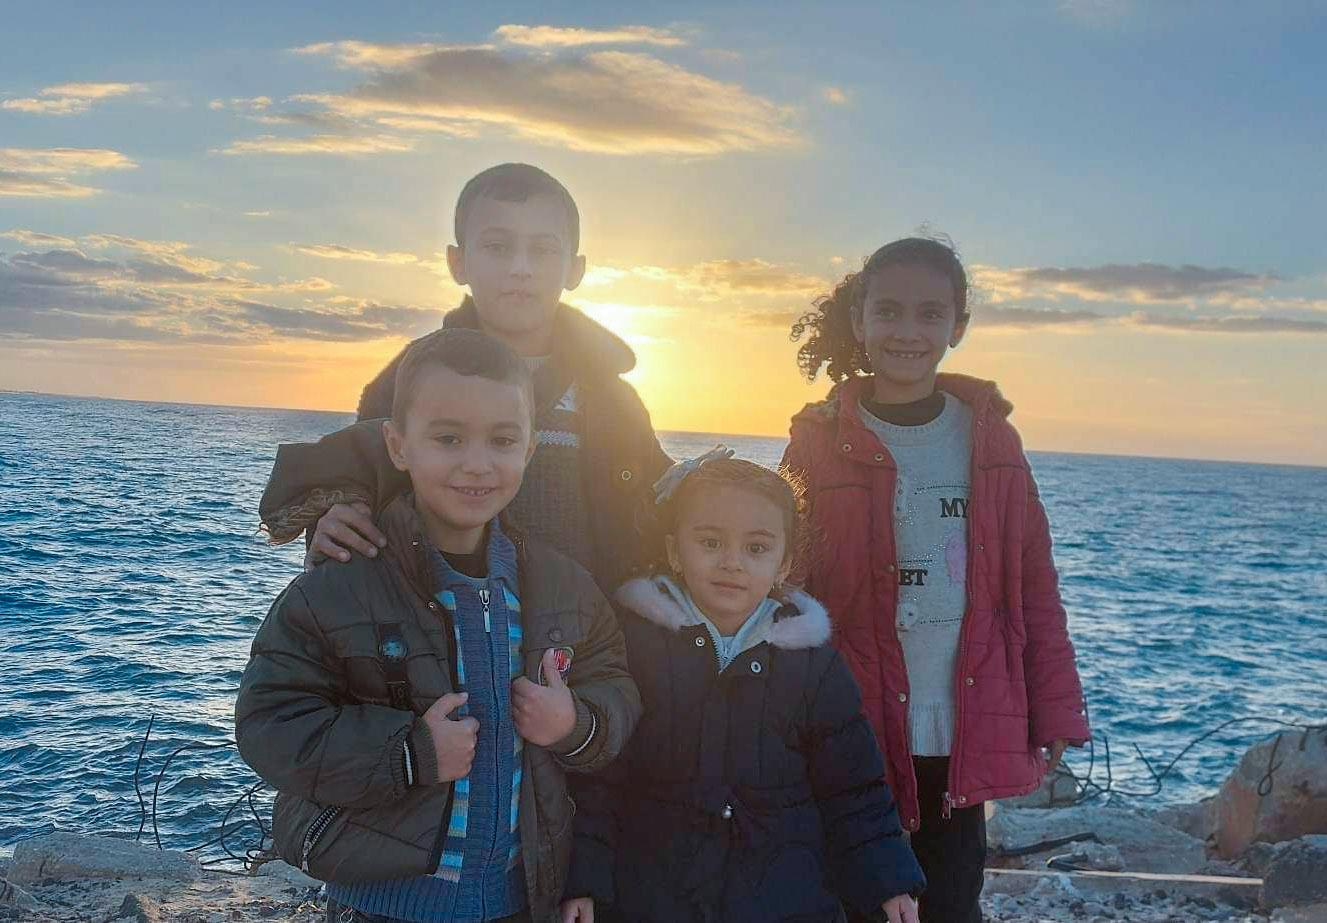 Siblings: Siblings Jawad (10 years old), Khadija (8 years old), Abdullah (6 years old), and Safiya (4 years old) gathered here. 